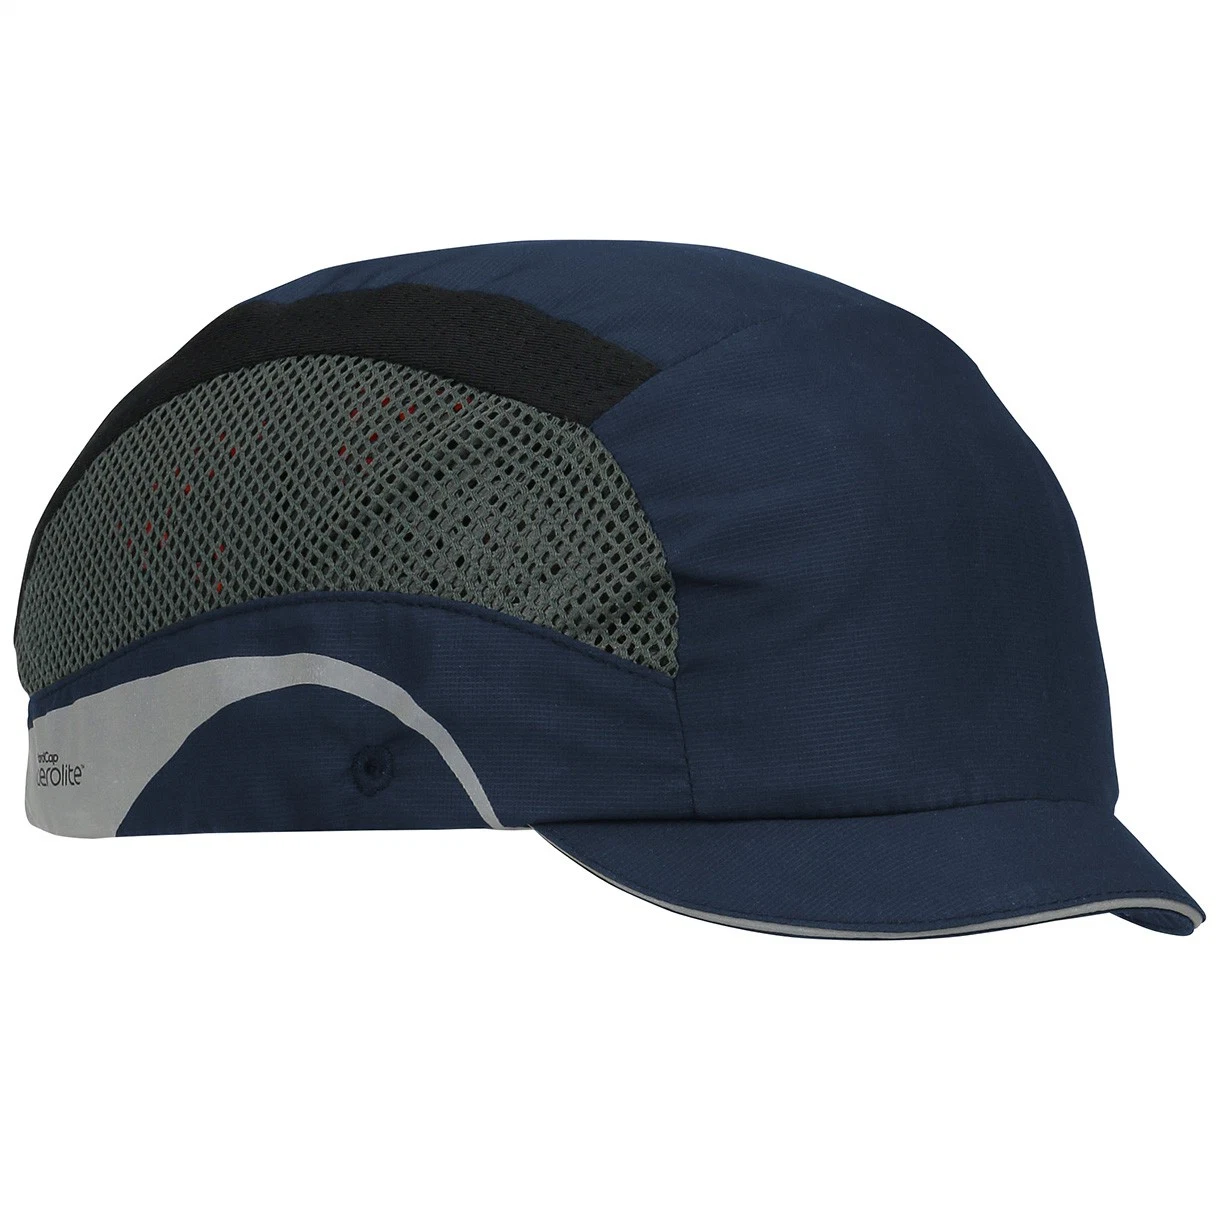 Professionelle Industrie Helm ABS Material Workshop Baseball Hüte Dunkelblau Arbeitsabdeckungen